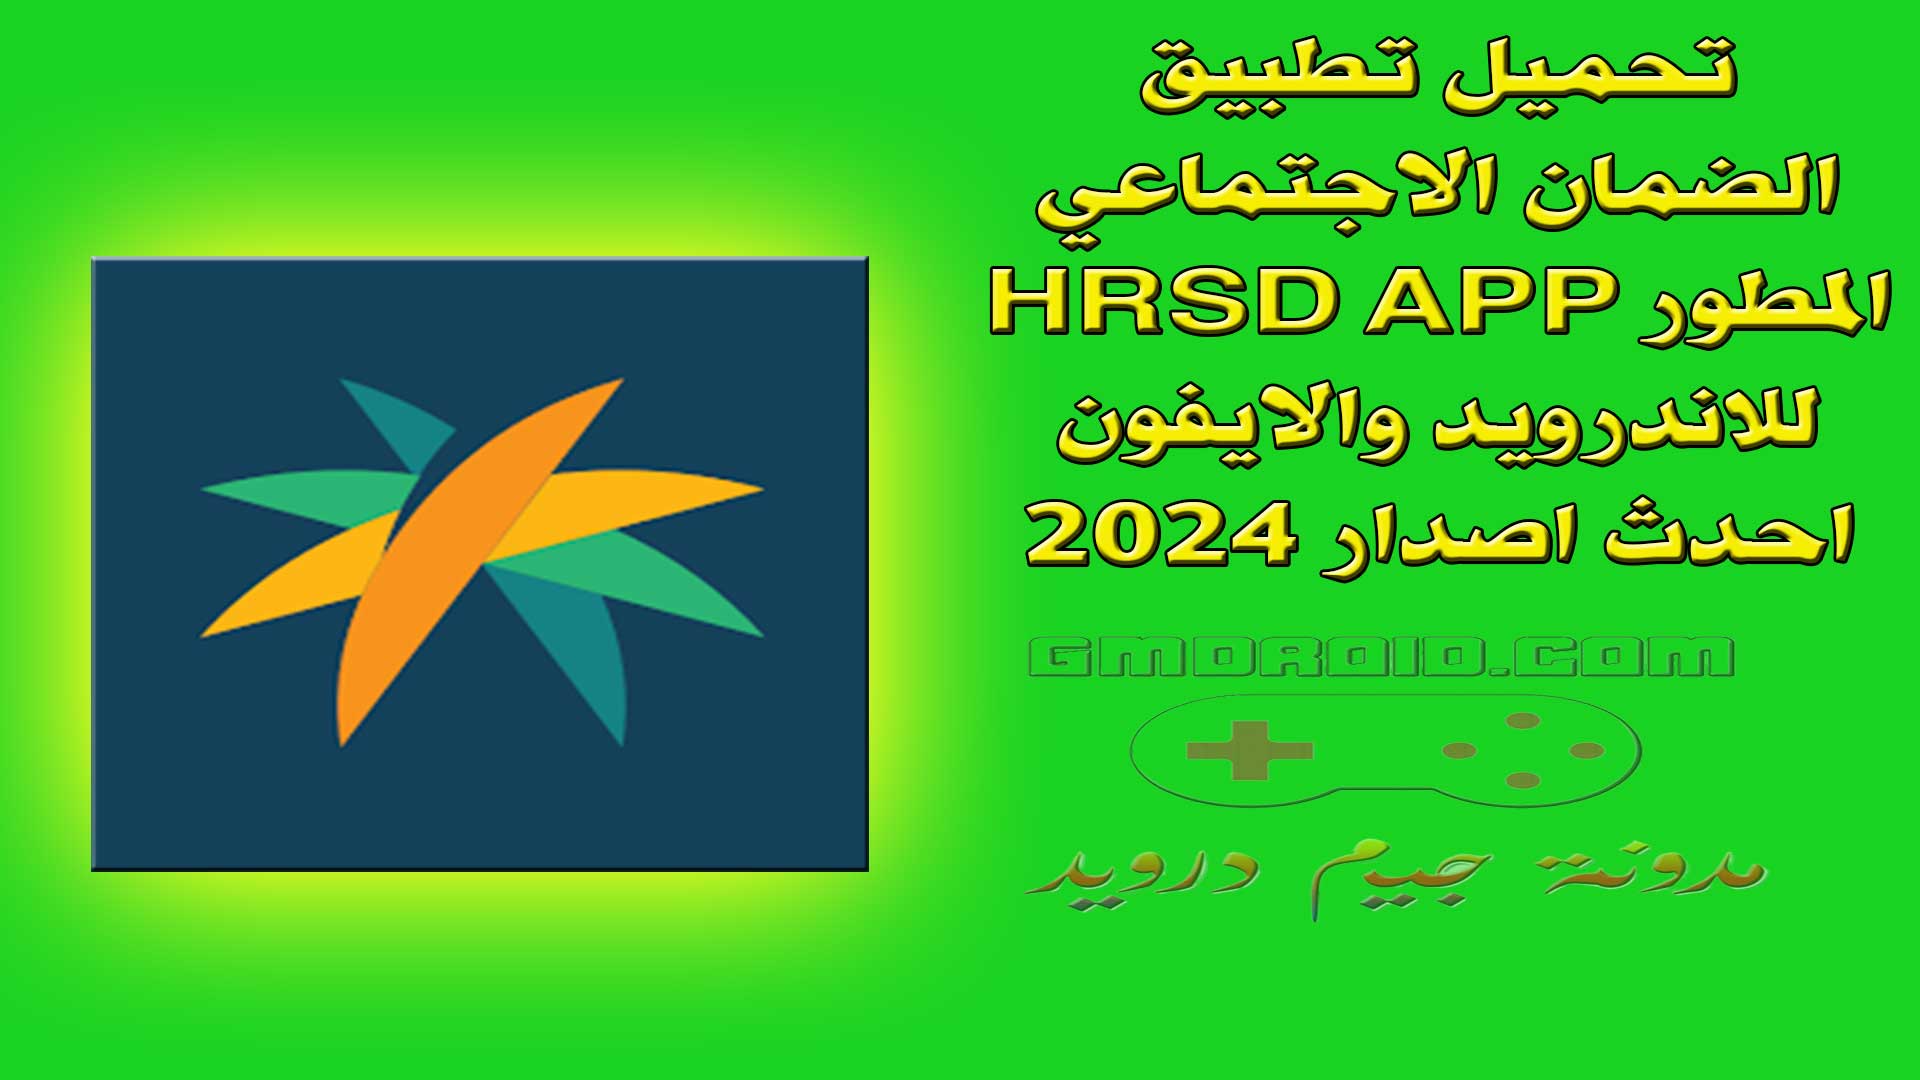 تحميل تطبيق الضمان الاجتماعي المطور HRSD APP للاندرويد والايفون احدث اصدار 2024